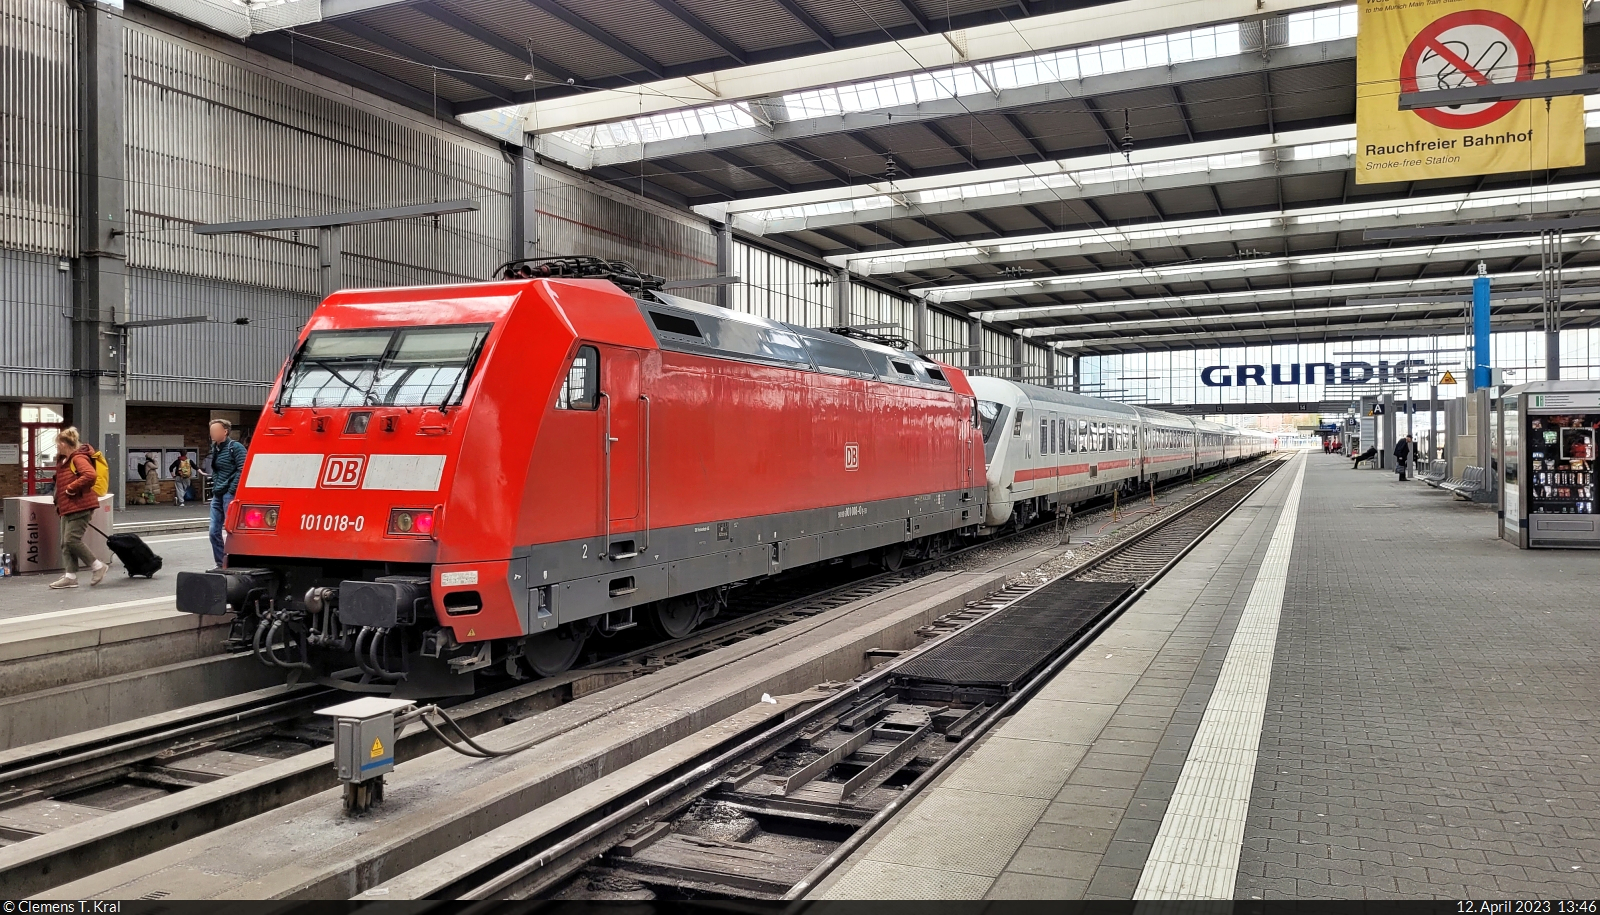 München Hbf: 101 018-0 steht stromlos vor einem IC1-Wagenpark am Prellbock von Gleis 13.

🧰 DB Fernverkehr
🕓 12.4.2023 | 13:46 Uhr